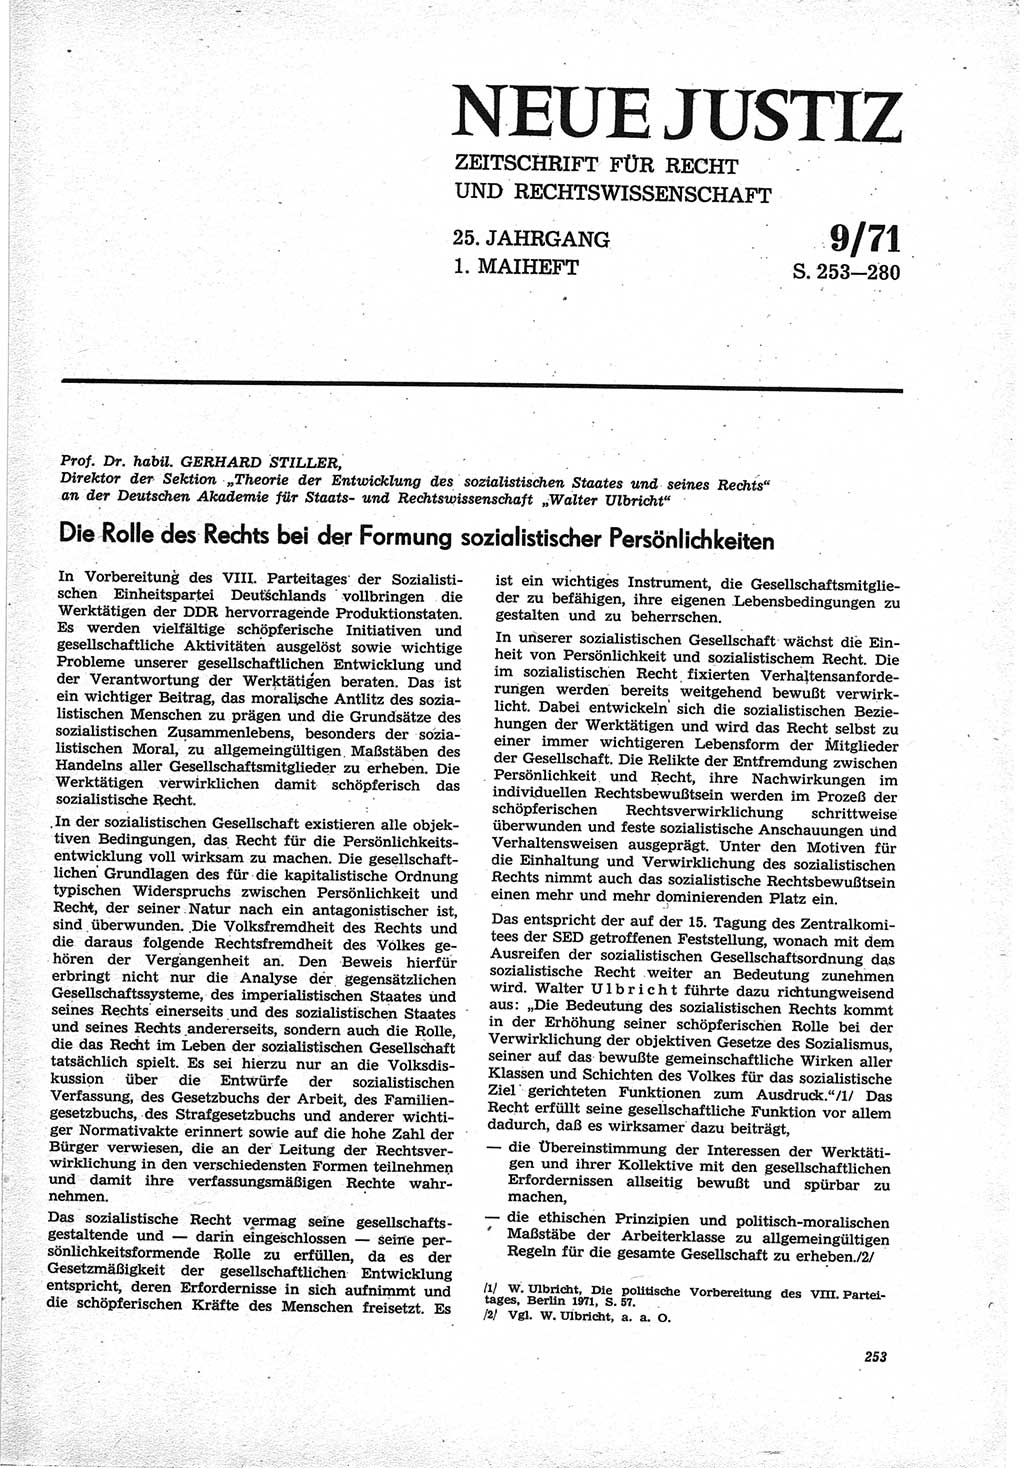 Neue Justiz (NJ), Zeitschrift für Recht und Rechtswissenschaft [Deutsche Demokratische Republik (DDR)], 25. Jahrgang 1971, Seite 253 (NJ DDR 1971, S. 253)